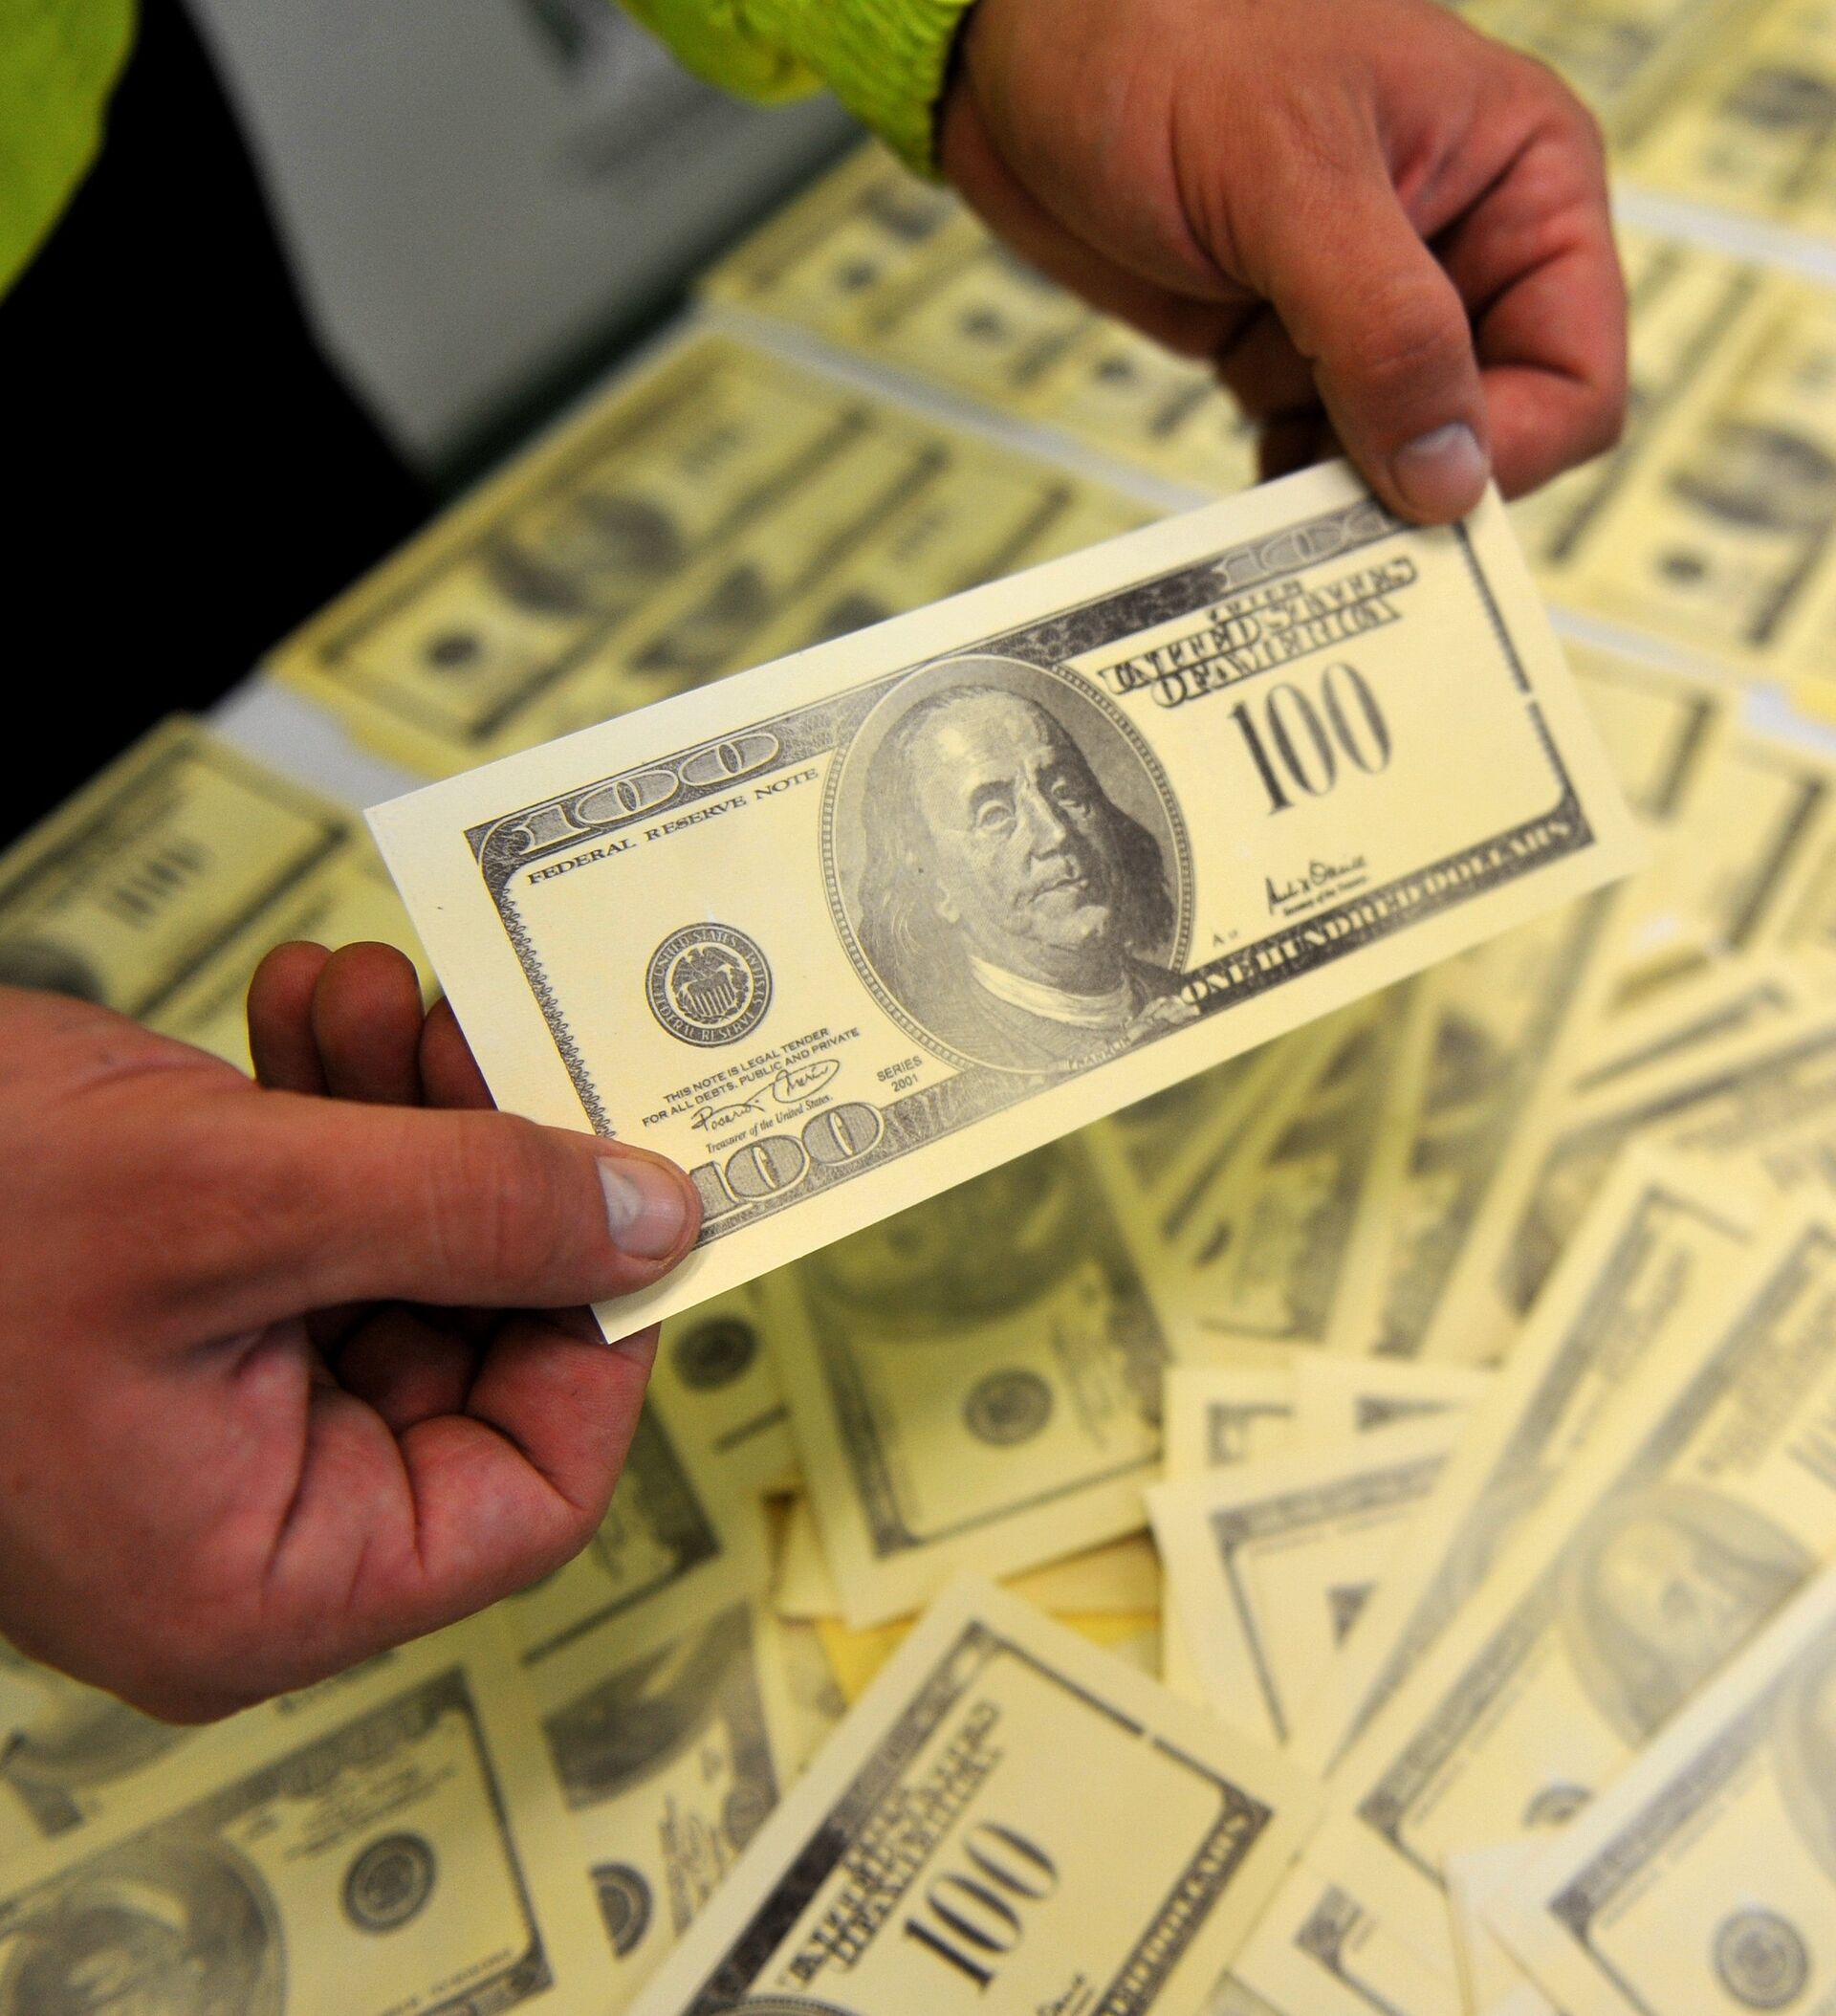 Фальшивые деньги Кыргызстан. Доллары с печатью в Киргизии. Фальшивые деньги Бишкек. Акча картинка. 72 тысячи долларов